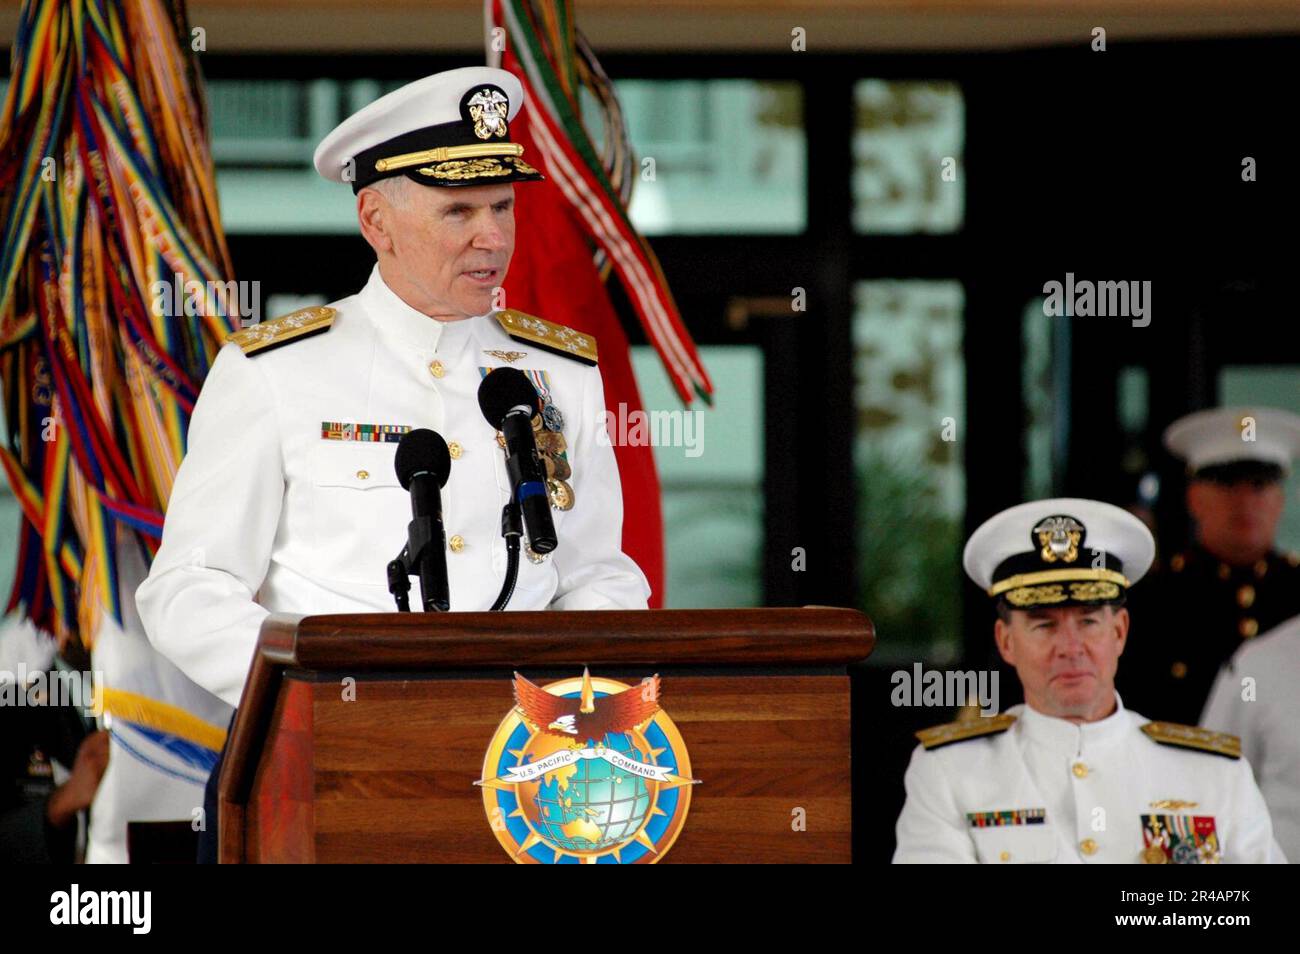 US Navy, der neue Commander der USA Pacific Command, ADM. William J. Fallon, spricht während der Zeremonie zum Kommandowechsel für die USA zu seinem neuen Kommando Kommandobereich Pazifik (PACOM) Stockfoto